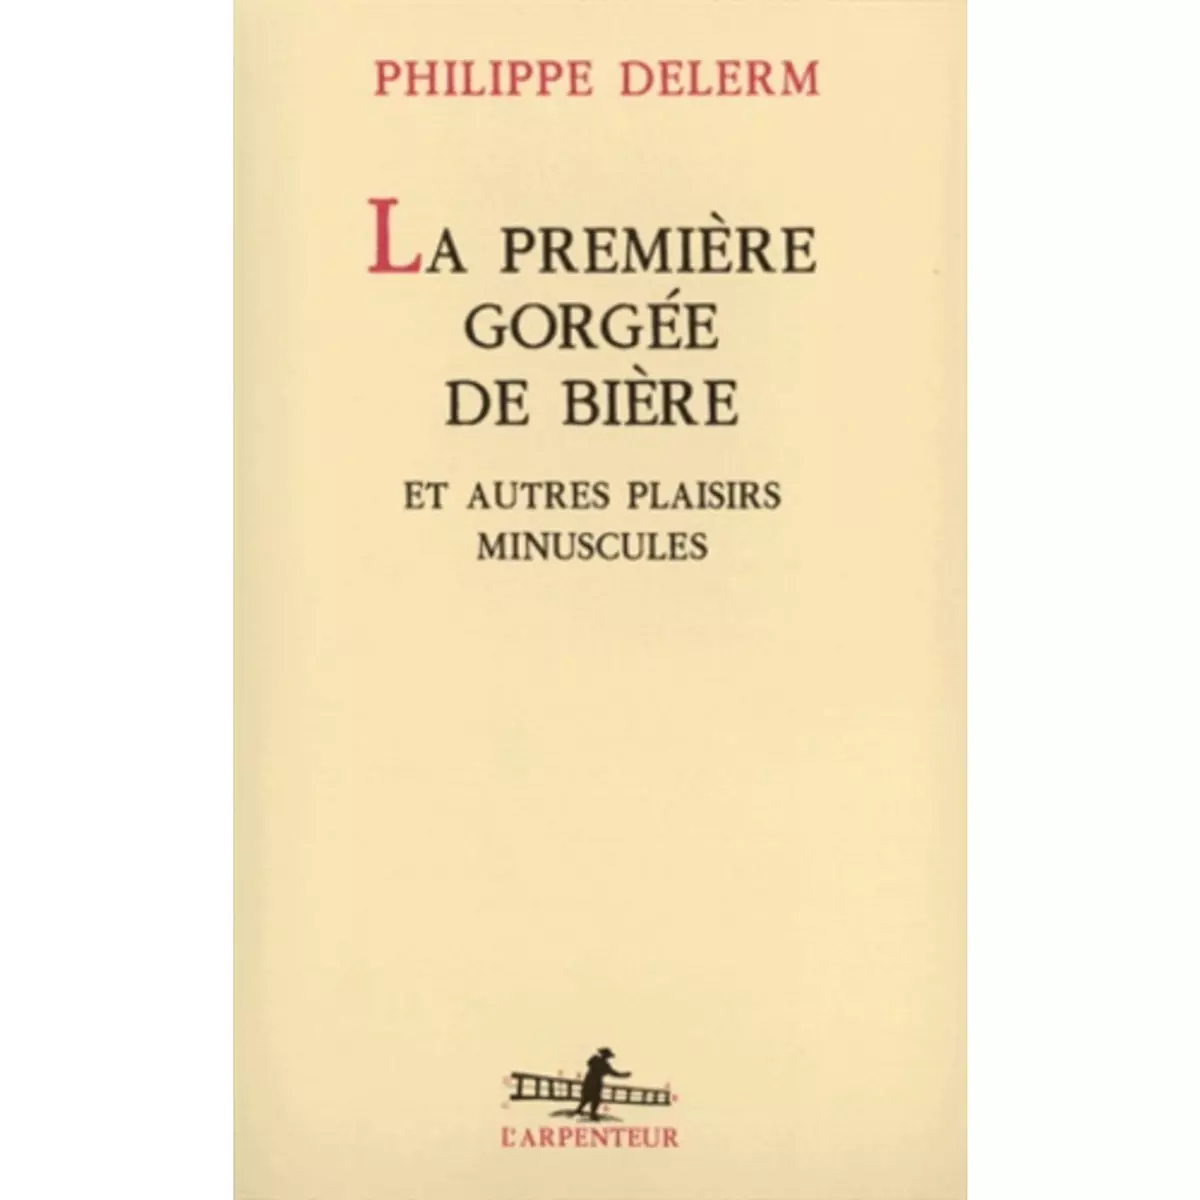  LA PREMIERE GORGEE DE BIERE. ET AUTRES PLAISIRS MINUSCULES, RECITS, Delerm Philippe